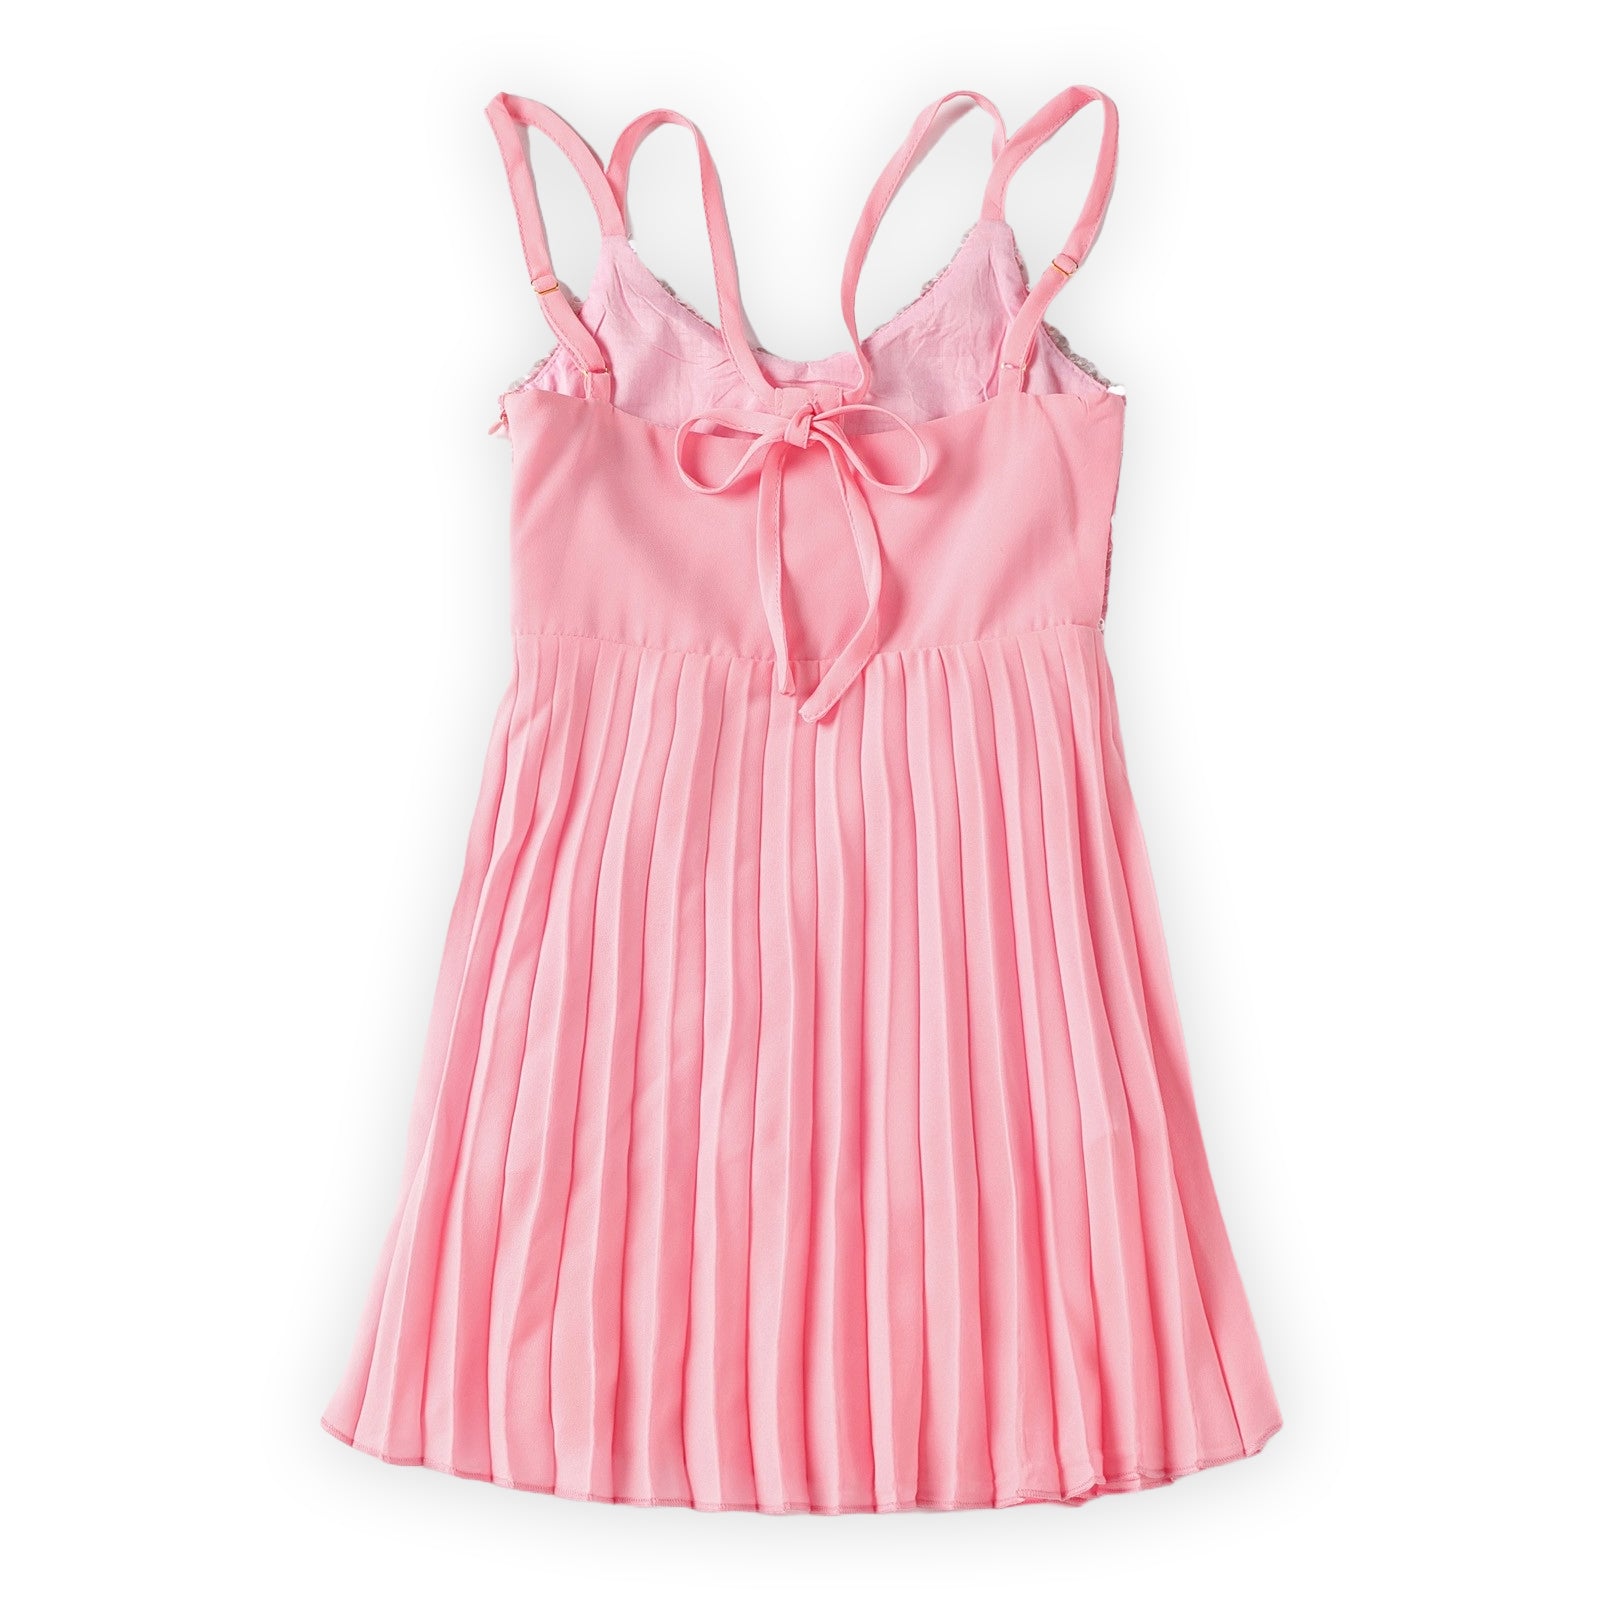 Pink Sparkling Sequin dress